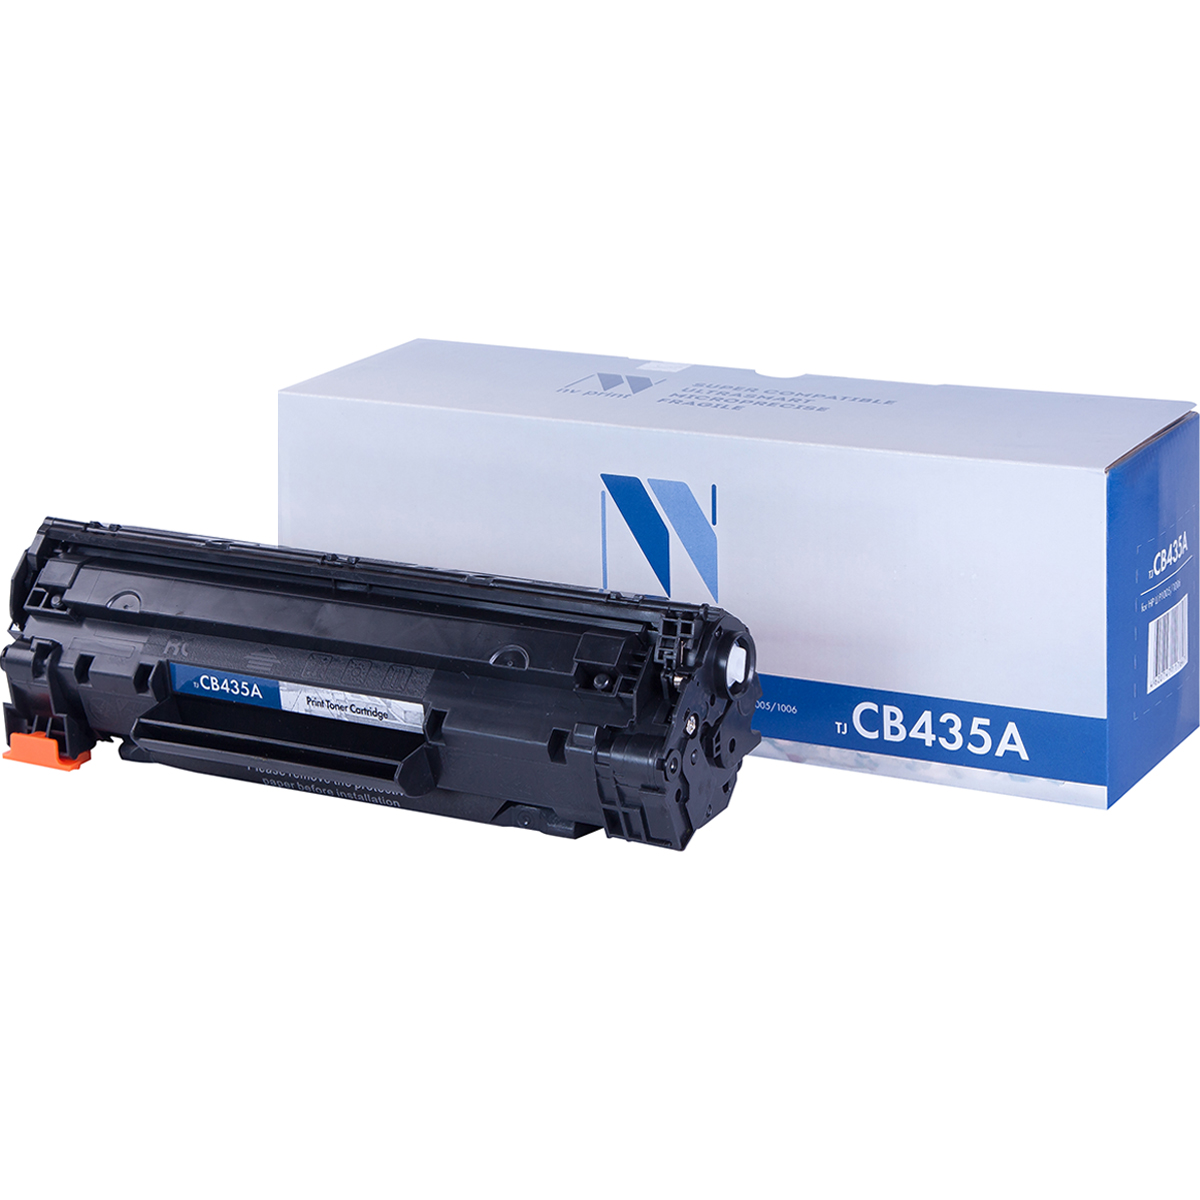 Картридж NV Print CB435A для Нewlett-Packard LJ P1005/1006 (1500k) картридж лазерный tfh919bpu1j1 pr cb435a cb435a для hp lj p1005 p1006 1500k чёрный